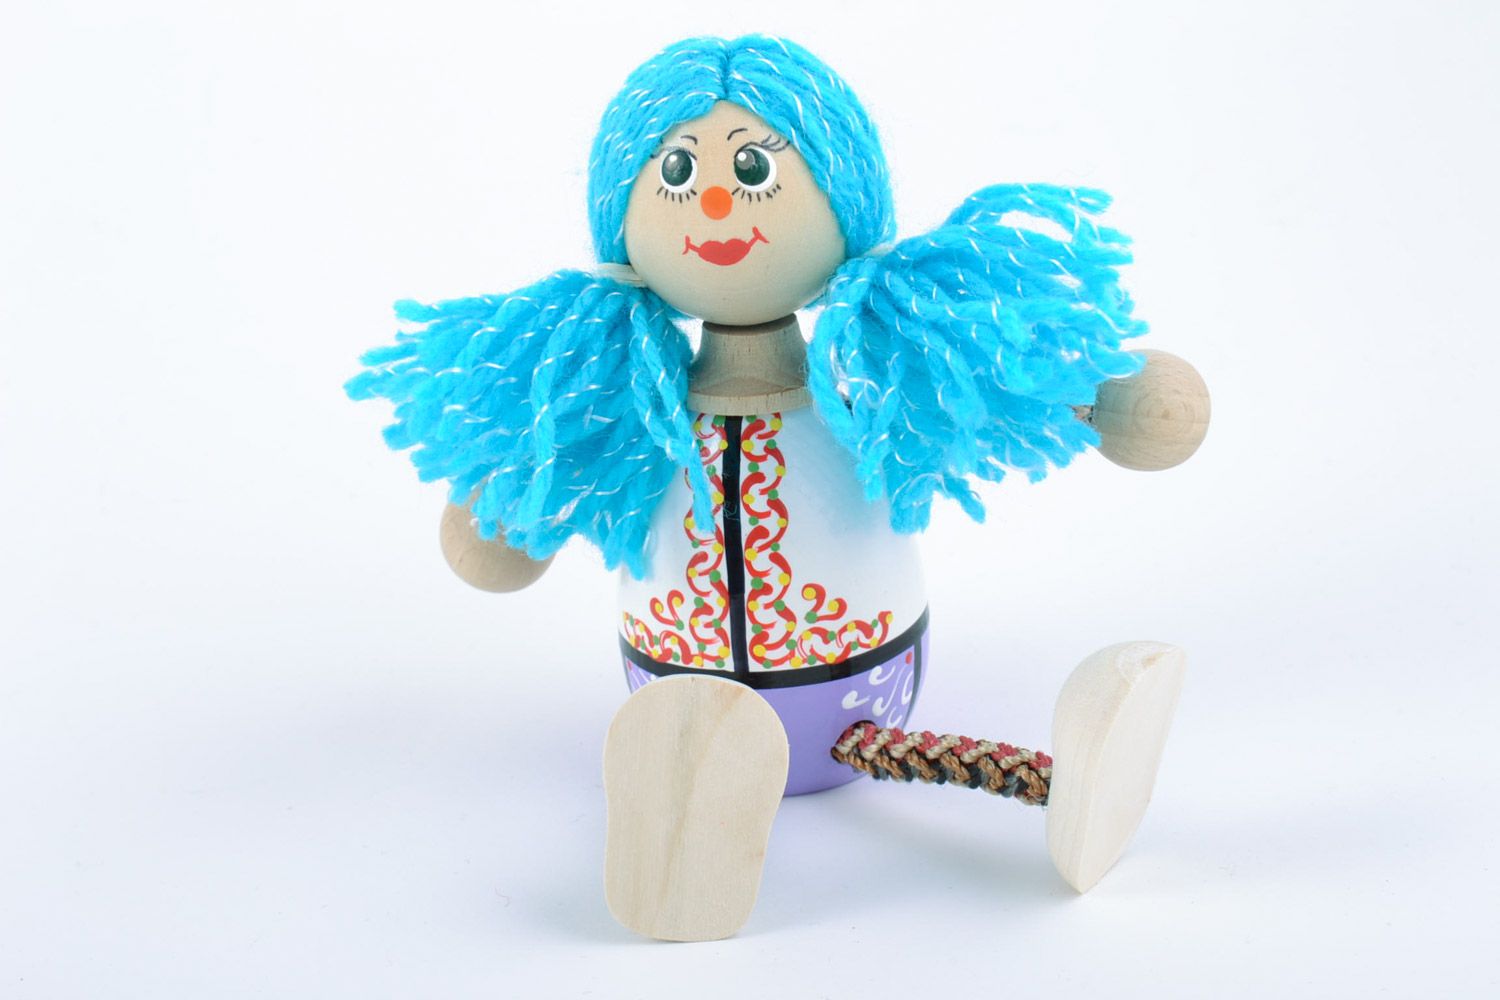 Petit jouet artisanal fait main écologique peint Fille aux cheveux bleus photo 4